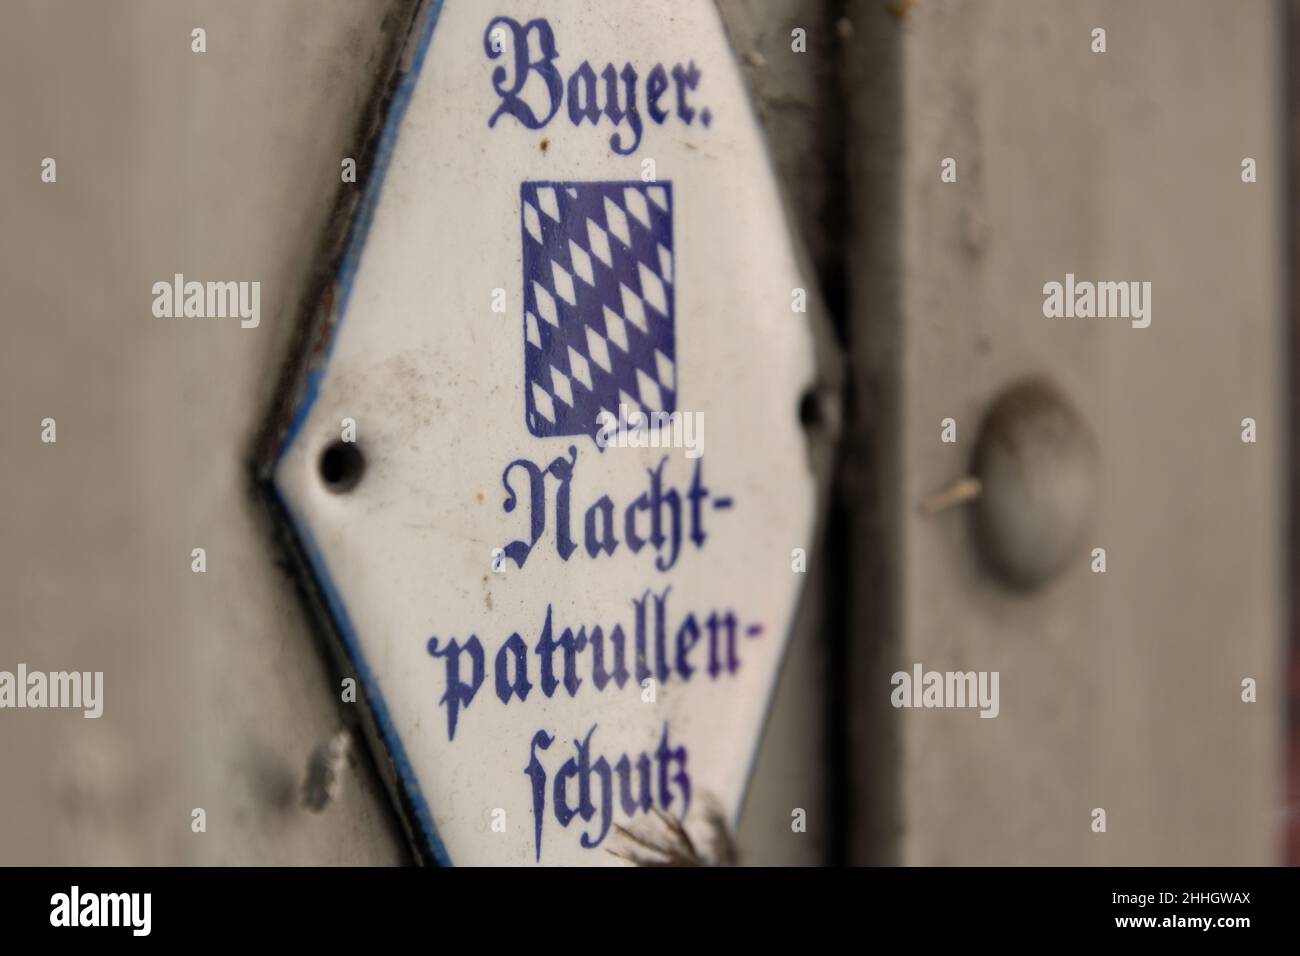 Bayerischer Nachtpatrullenschutz Wasserburg am Inn Stock Photo